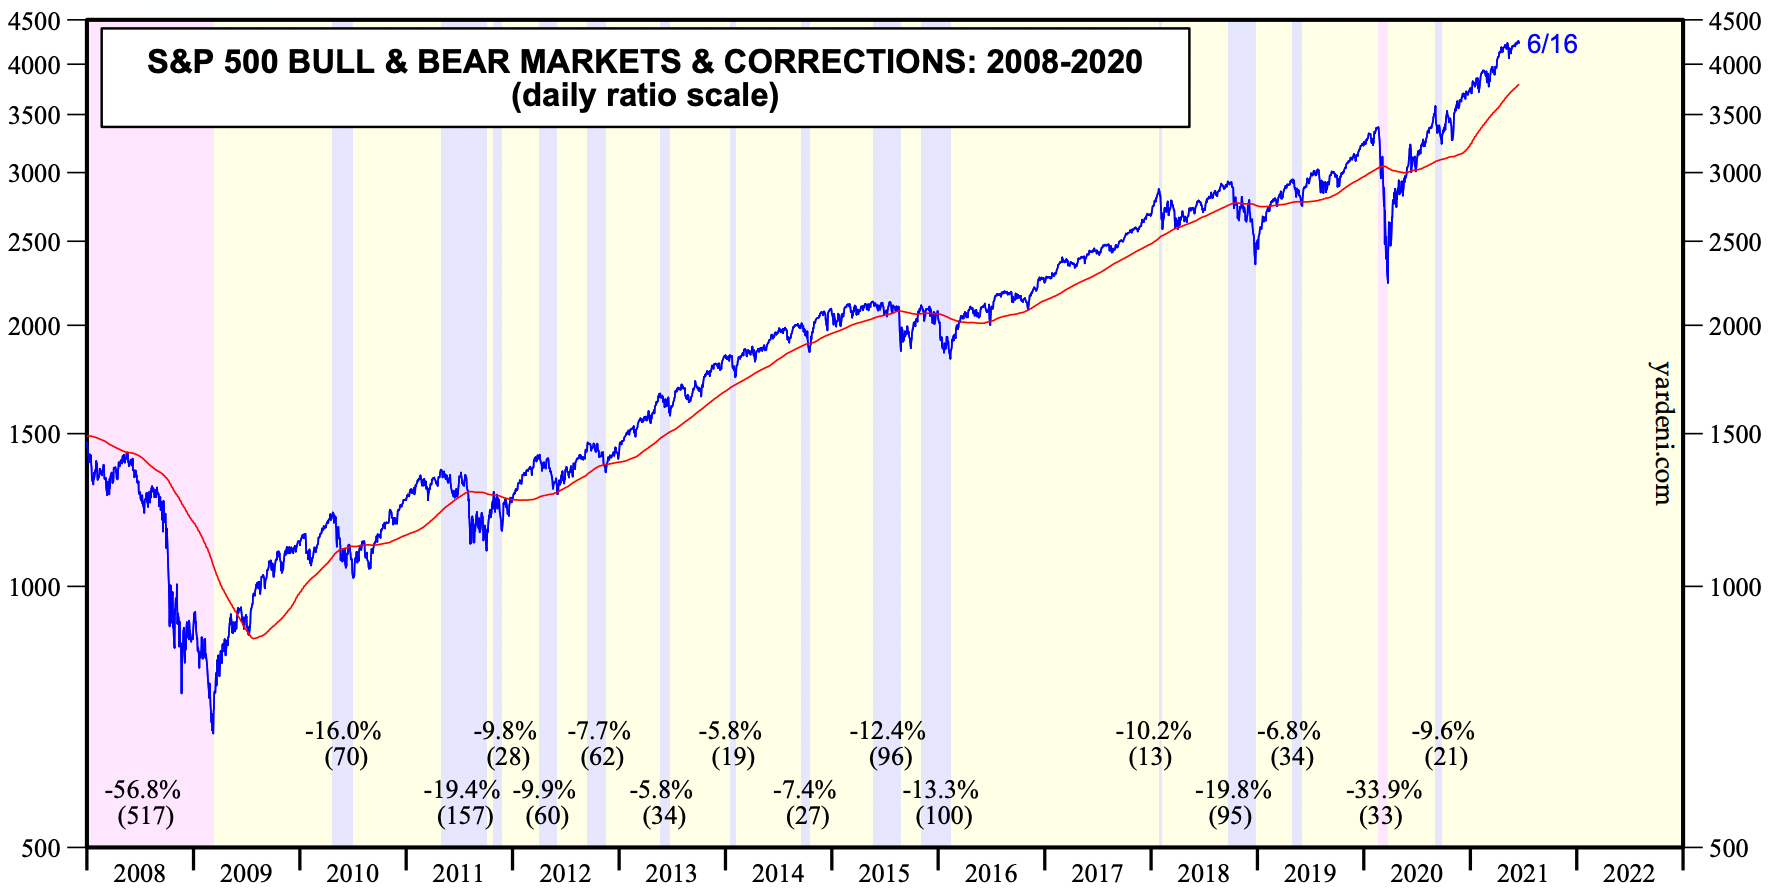 Цифры в скобках — длительность в днях. Источник: Yardeni Research, Inc. S&P 500 Bull & Bear Markets & Corrections